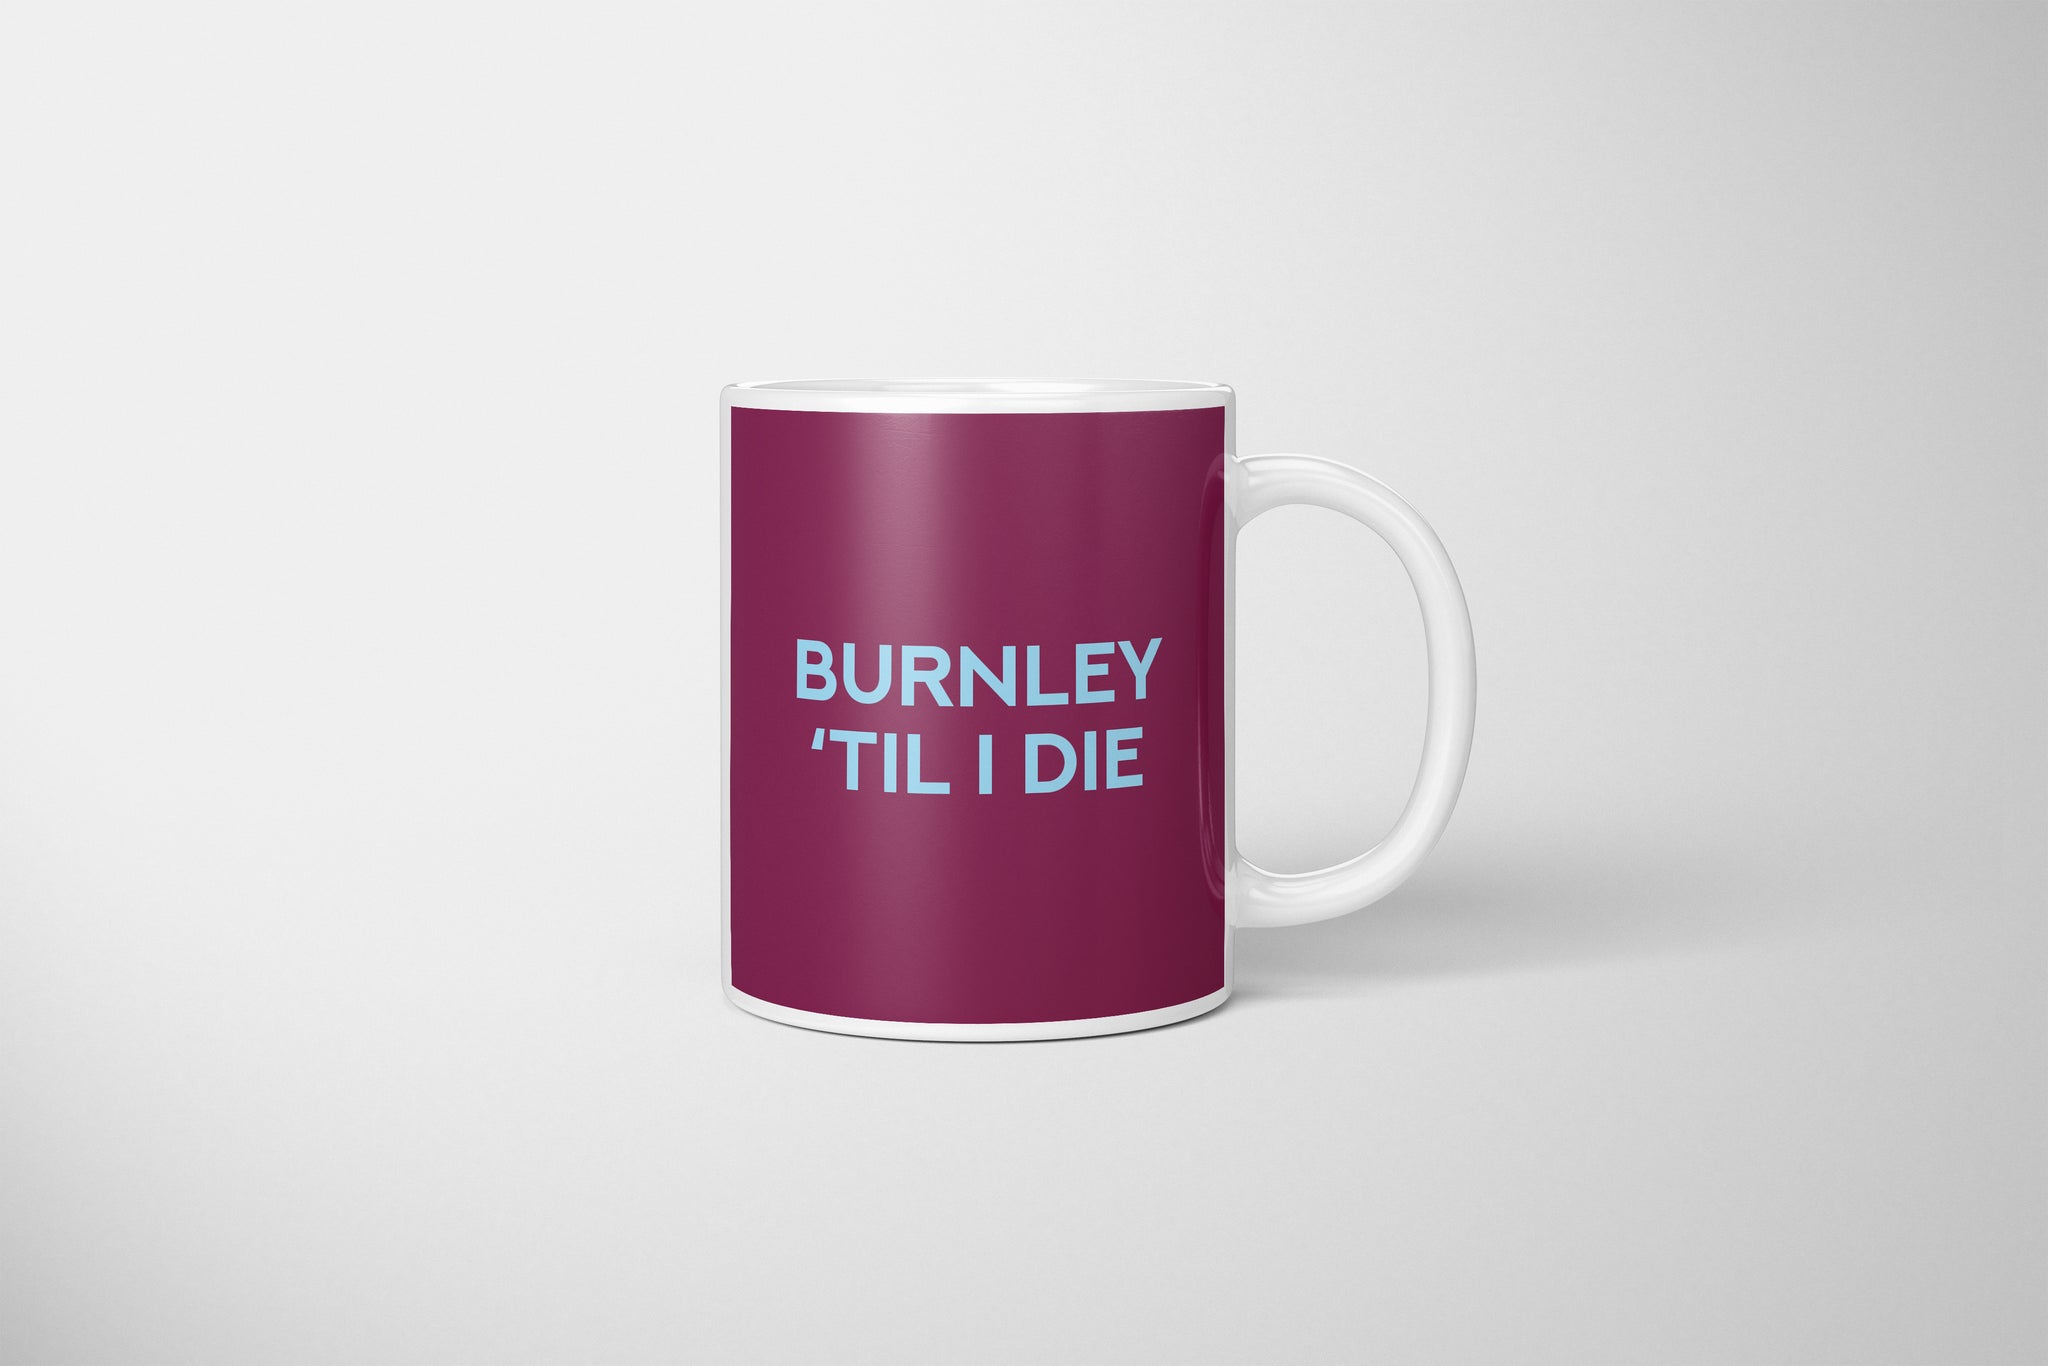 Burnley Fan Mug, Burnley Fan Mug, Burnley FC Mug, Burnley Football Fan Gift, Burnley Swear Mug, Gift For Burnley Fan, Perfect Mug For Burnley Fan, Burnley Present, Burnley Football Fan Present